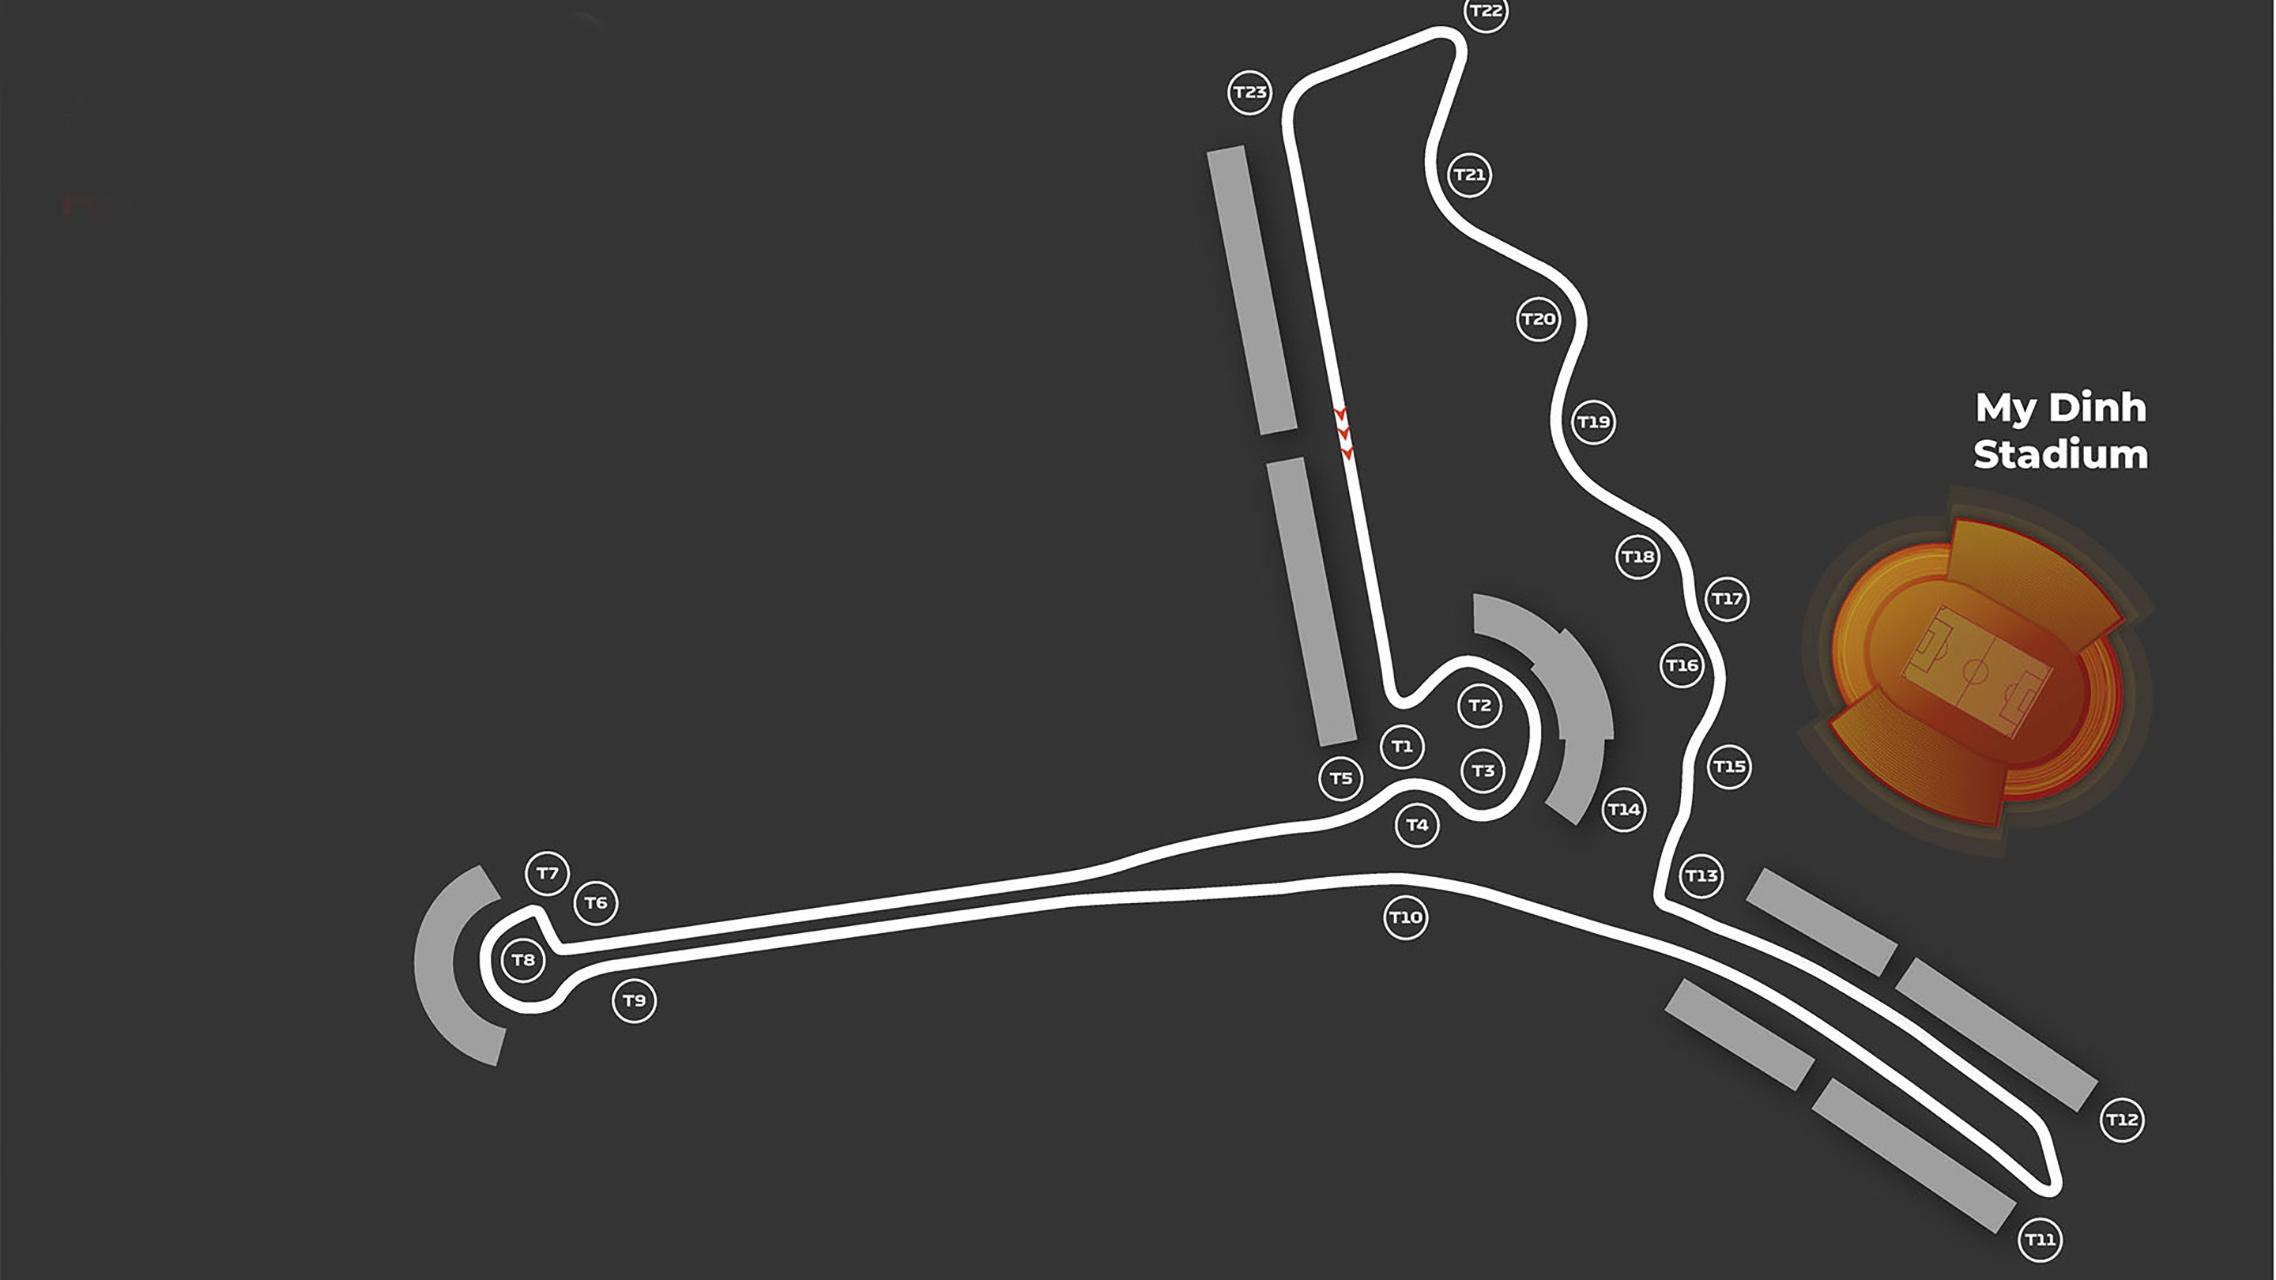 F1 GP van Vietnam track layout